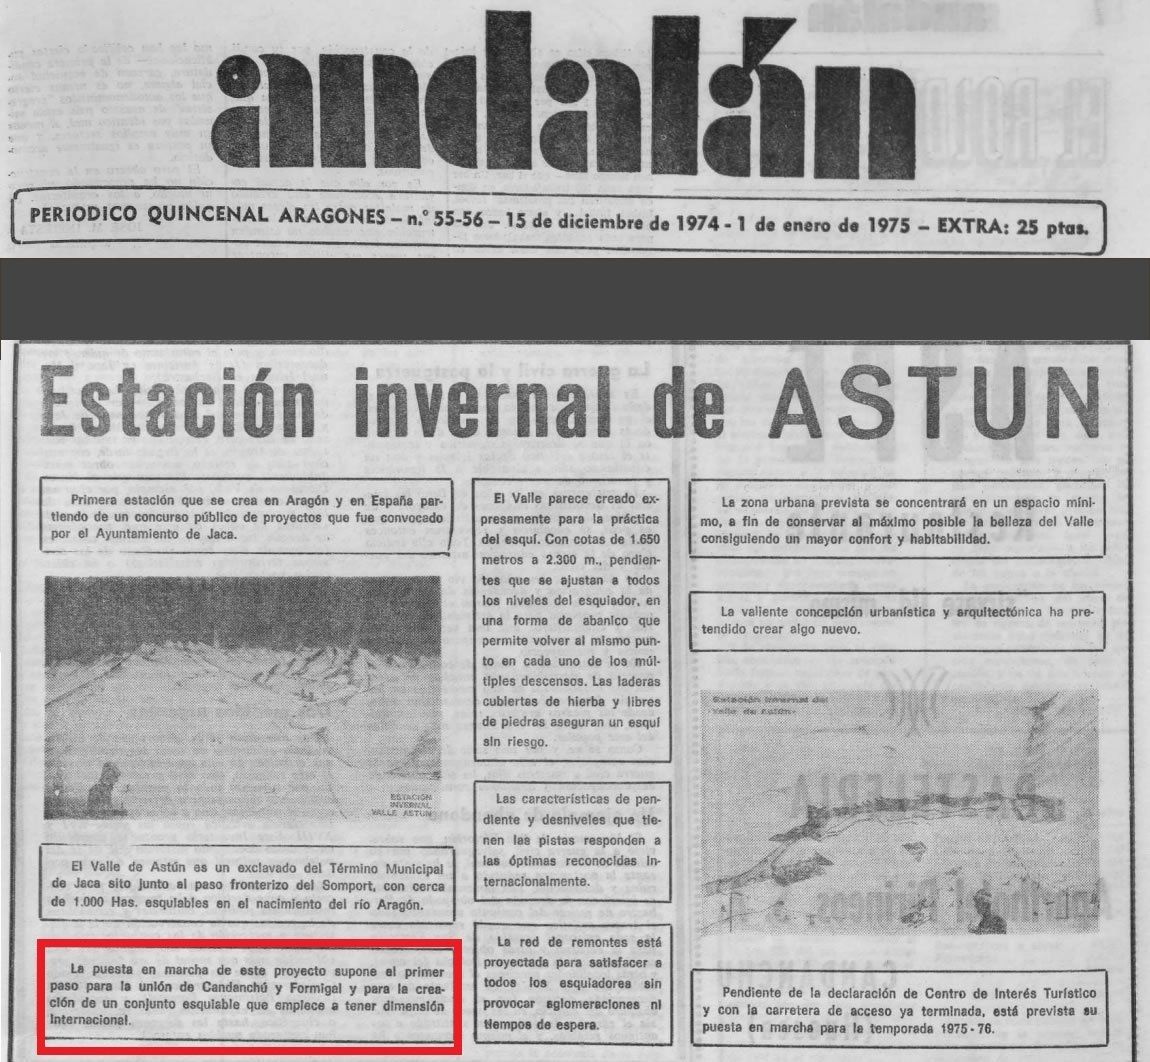 Diario Andalán. Inauguración de Astún